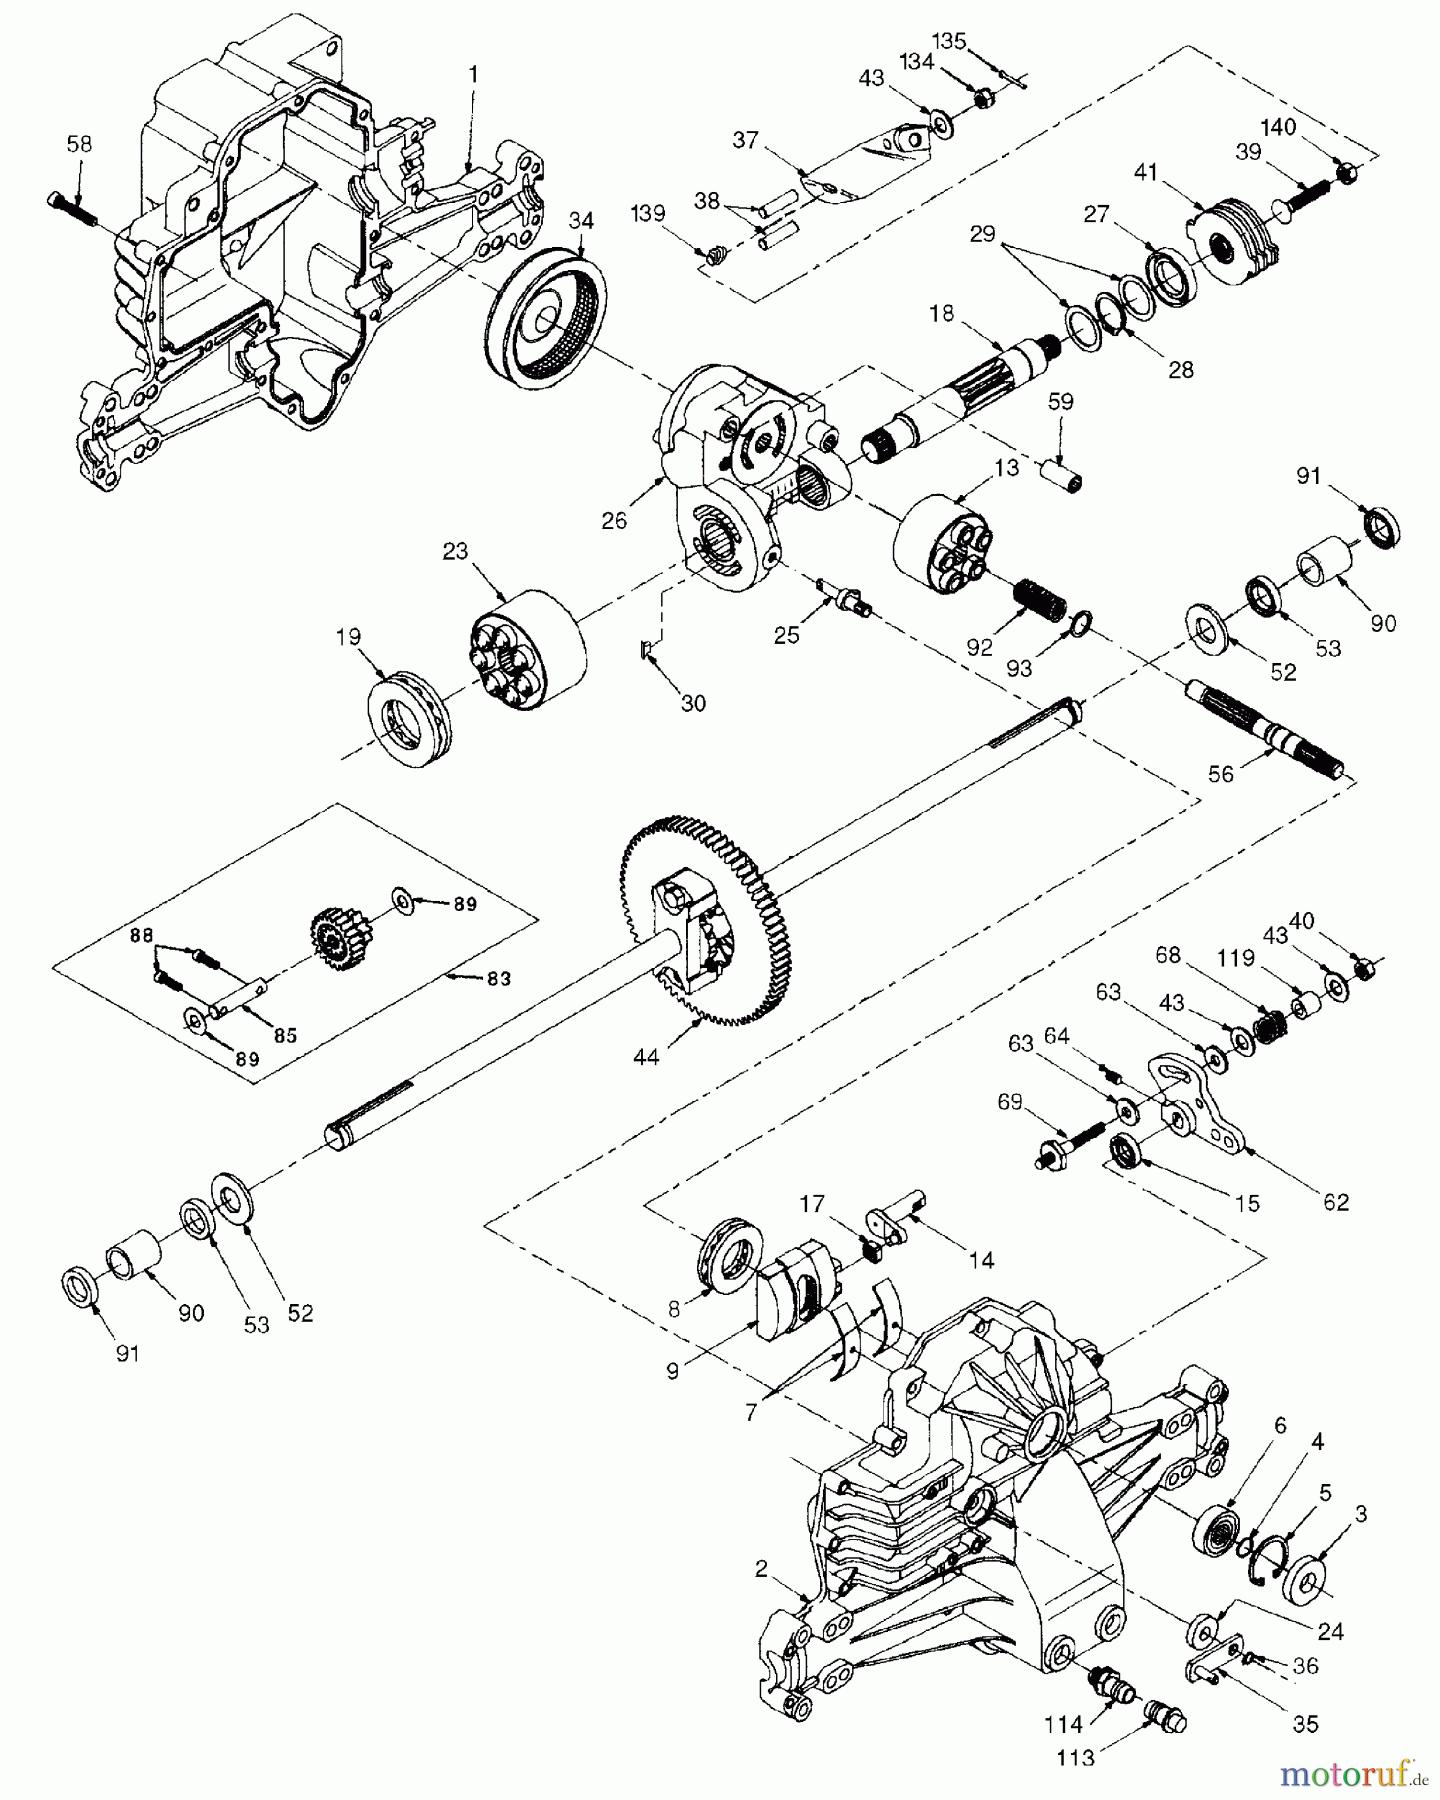  Husqvarna Rasen und Garten Traktoren YTH 180 (954830145A) - Husqvarna Yard Tractor (1995-10 & After) Hydro Transaxle (Model Number 0310-0650)